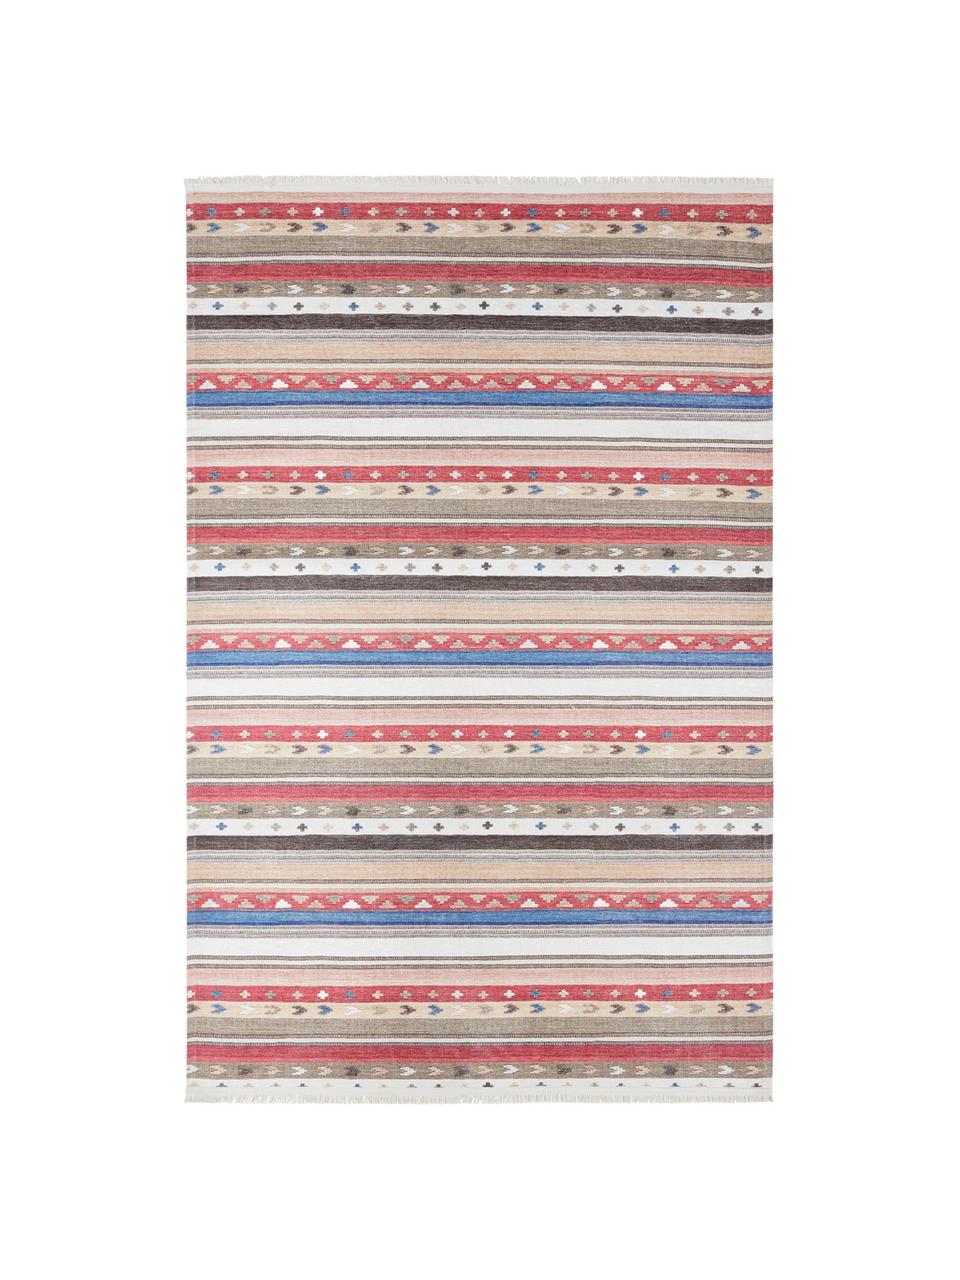 Teppich Senon im Orientstyle, Flor: 50% Polyester, 50% Baumwo, Mehrfarbig, B 180 x L 280 cm (Grösse M)